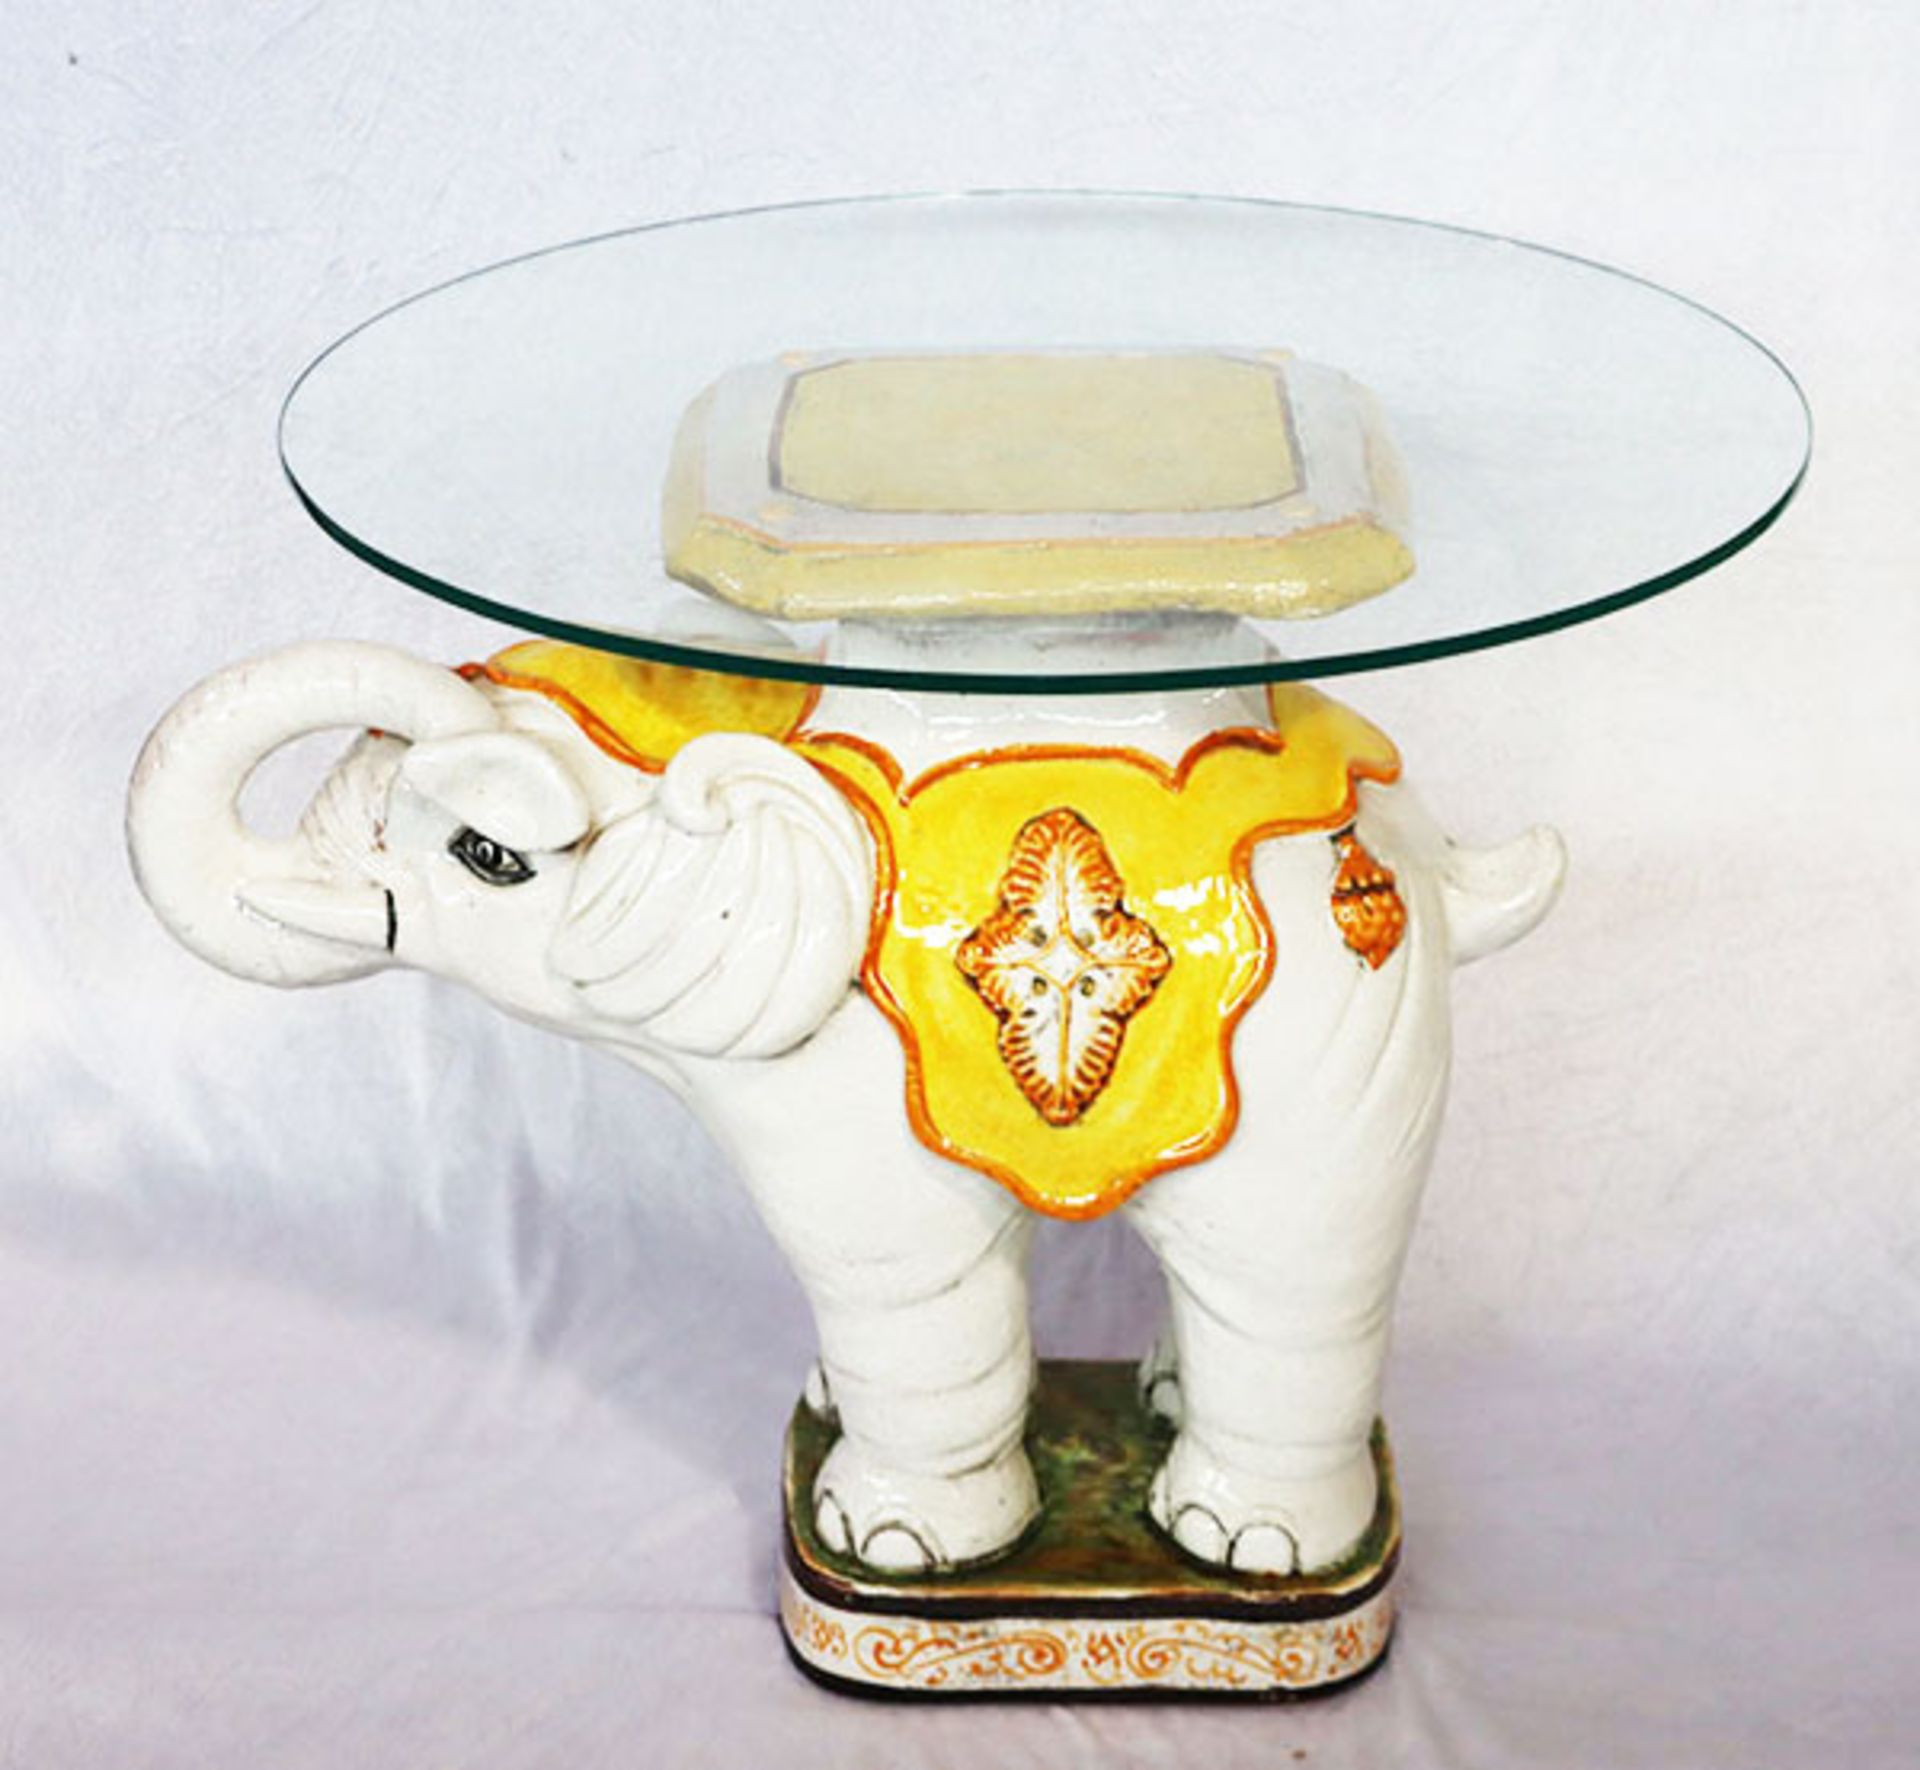 Keramik 'Elefant', farbig glasiert, mit runder Glasplatte, H 57 cm, D 64 cm, Gebrauchsspuren